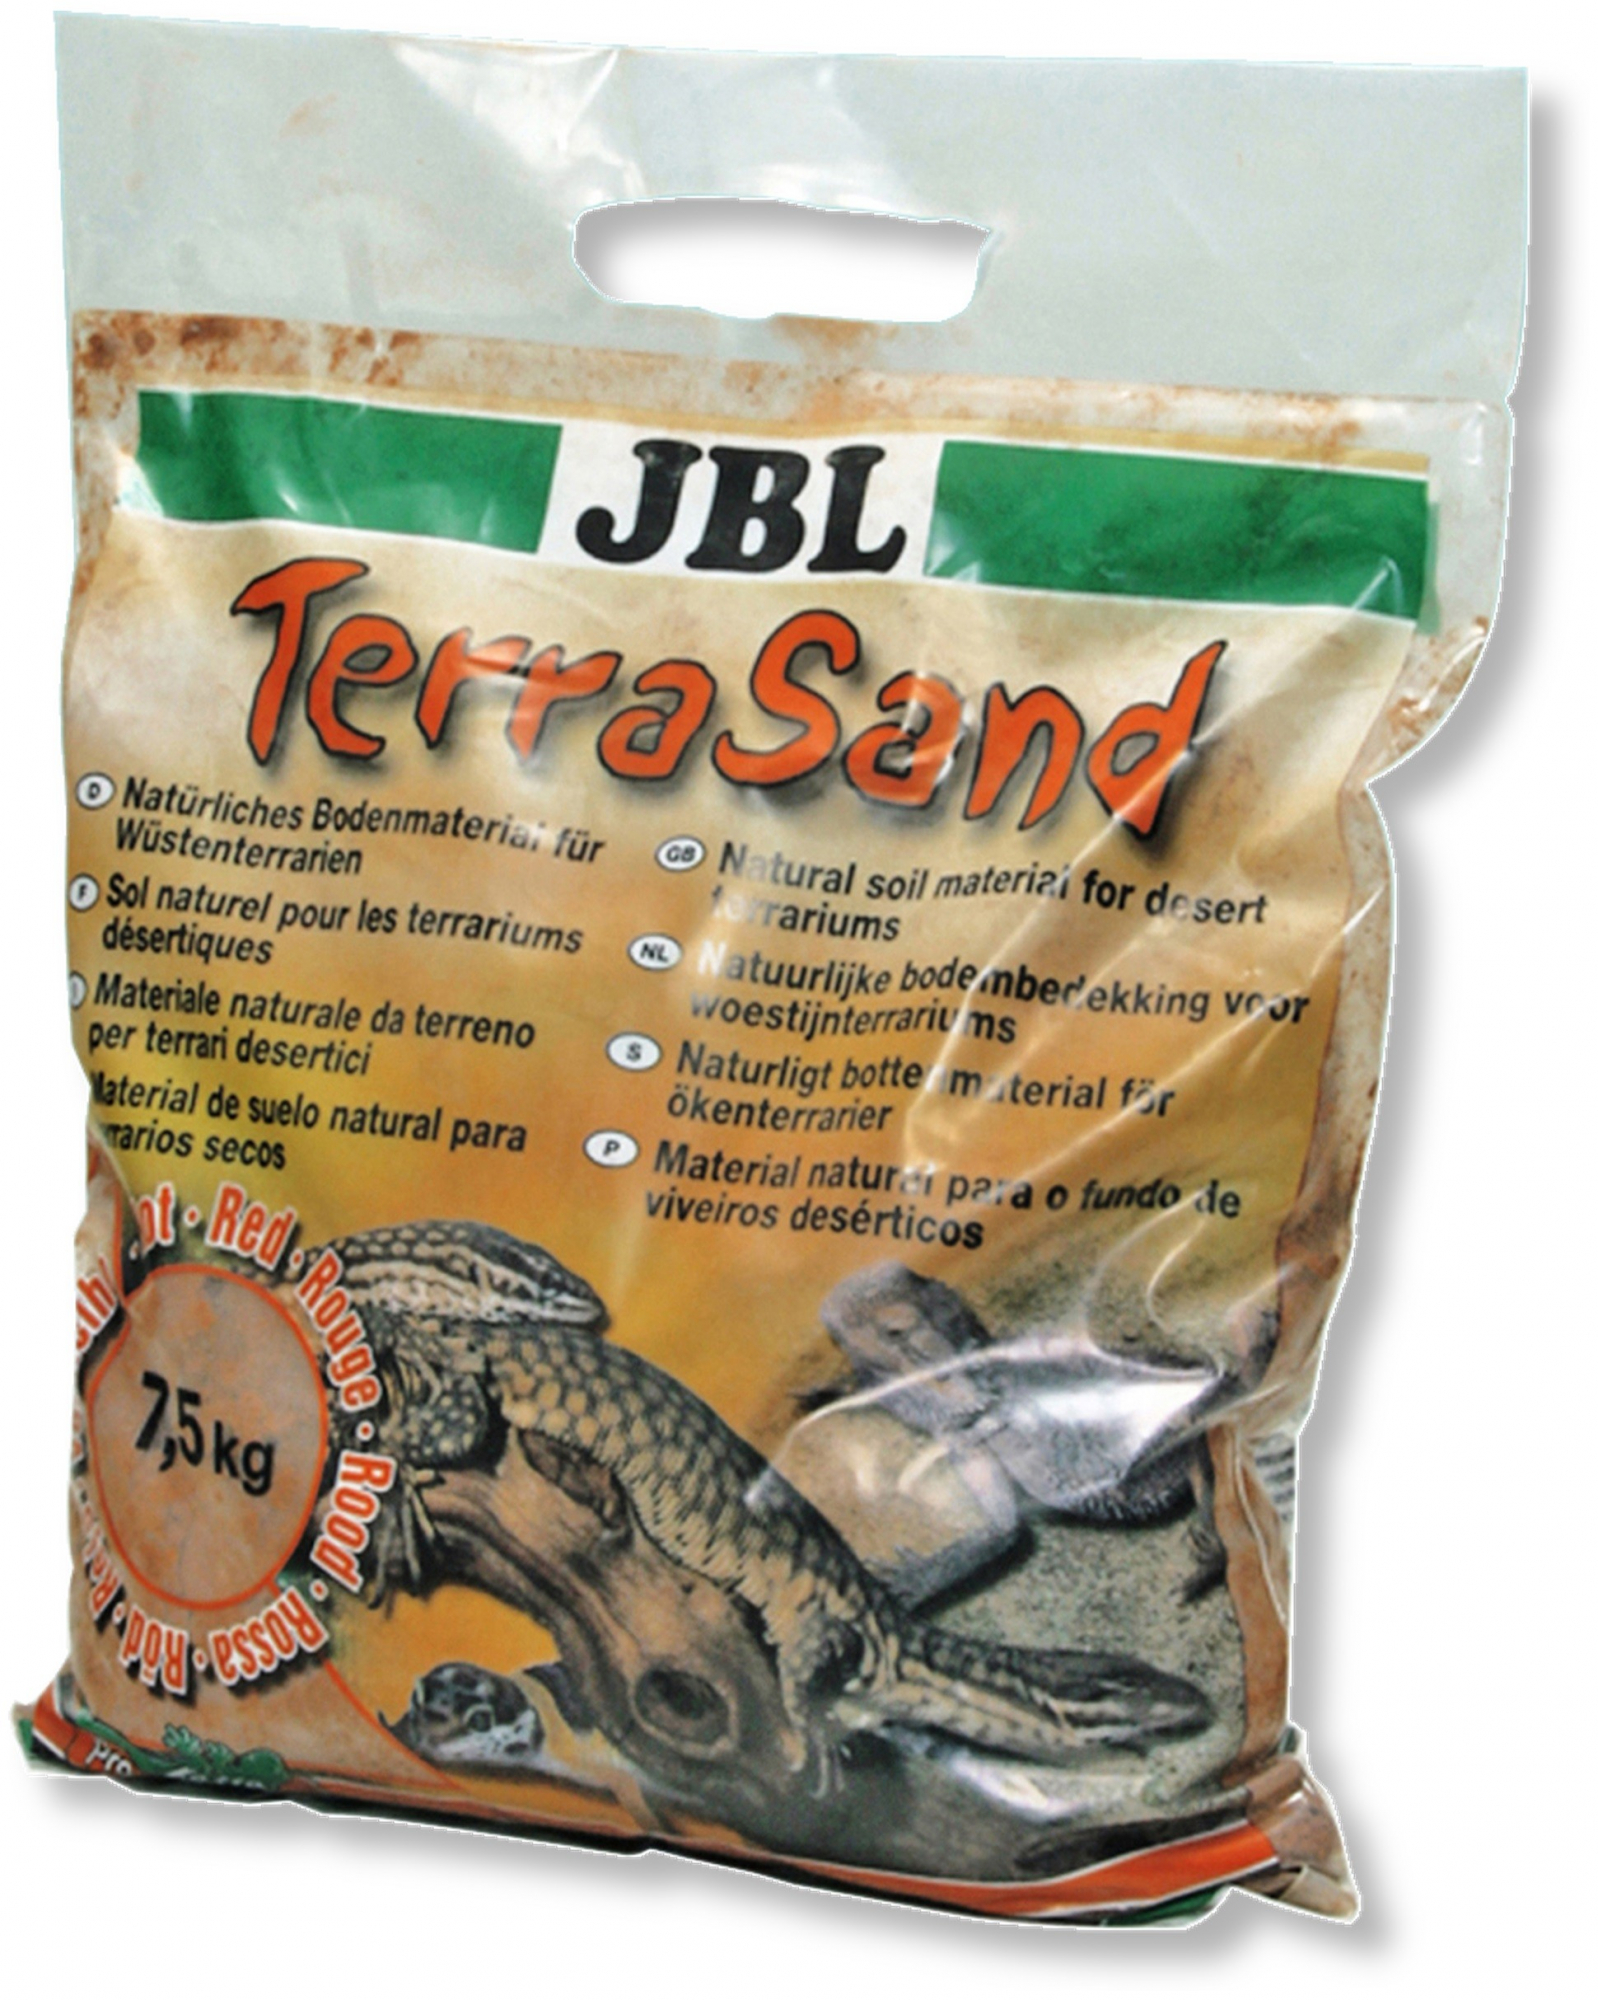 JBL Terra Sand Sustrato natural rojo